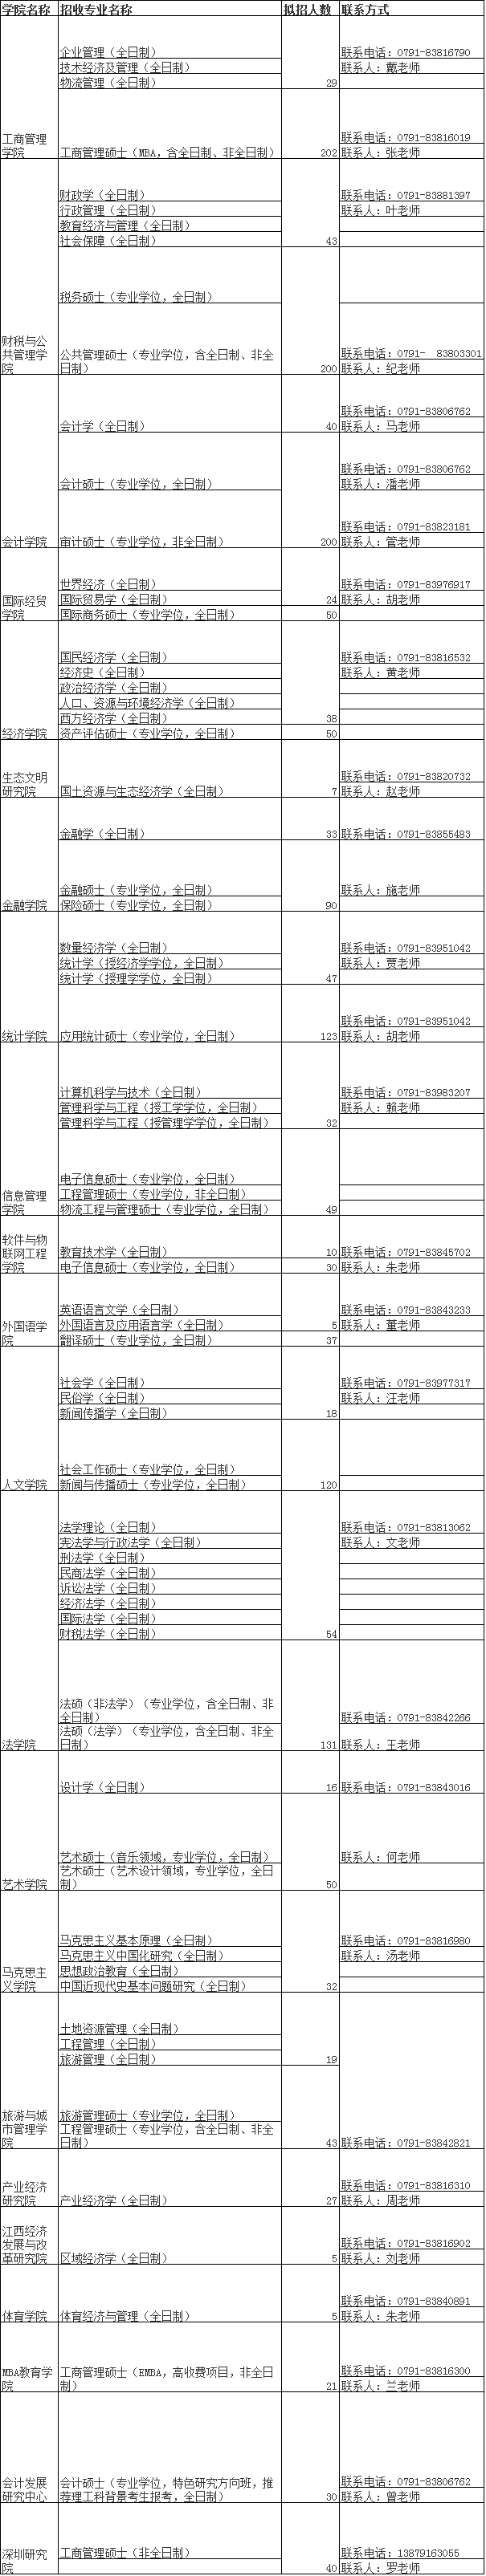 江西财经大学金融学院2021年研究生招生简章专业目录​​​​​​​